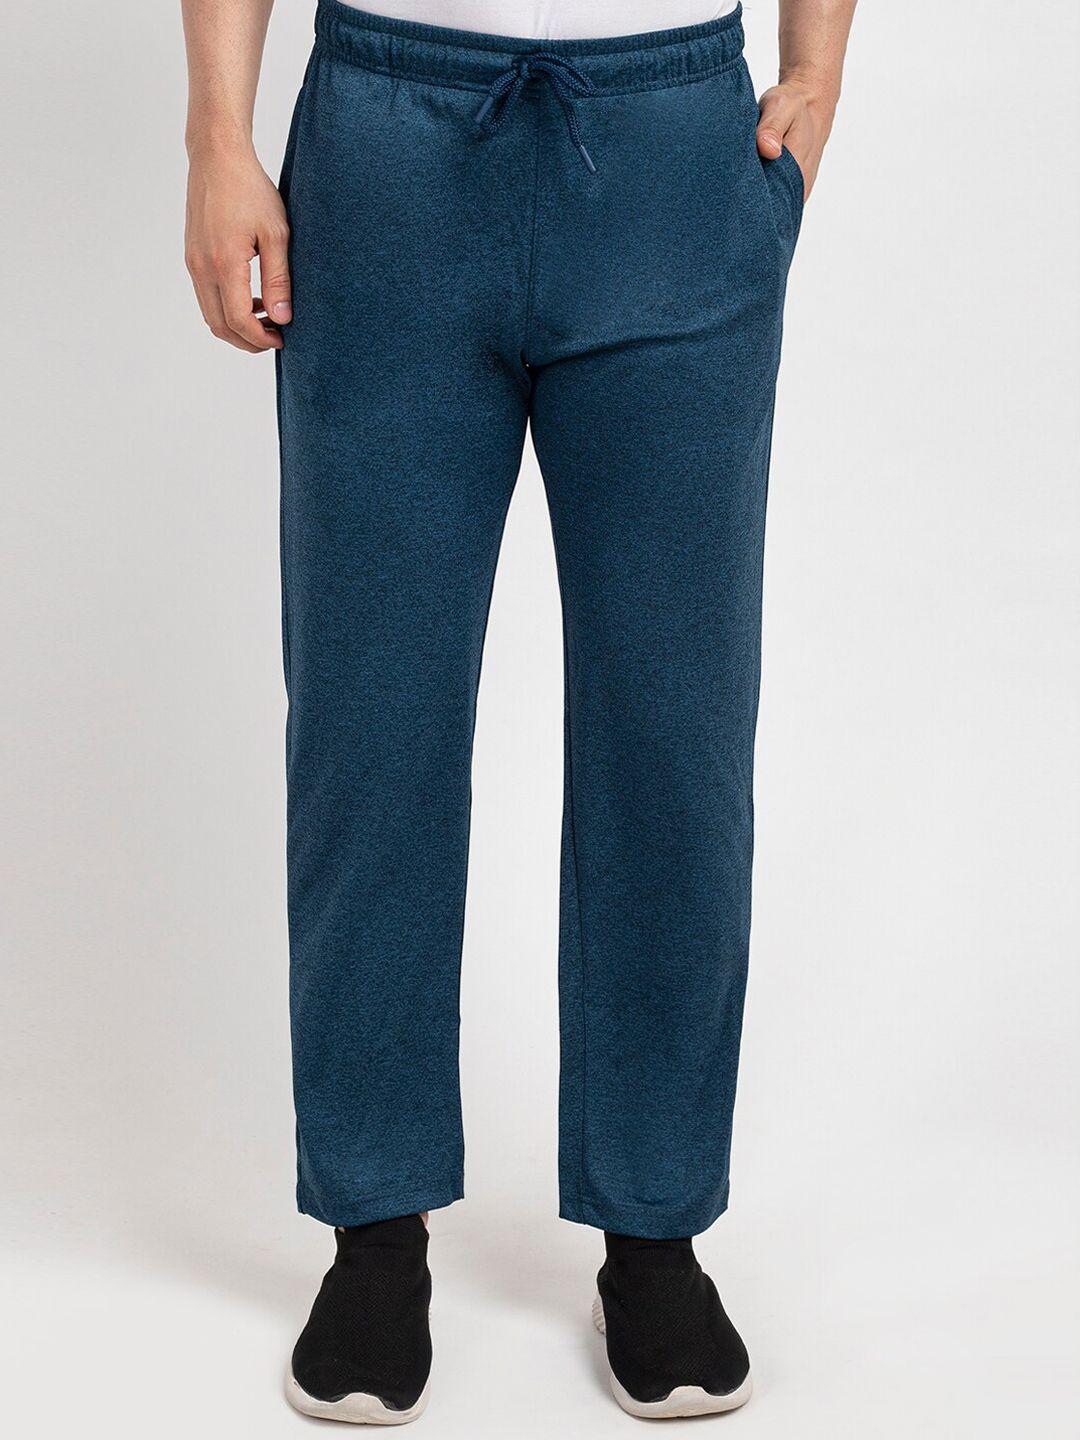 oakmans men blue cotton track pants